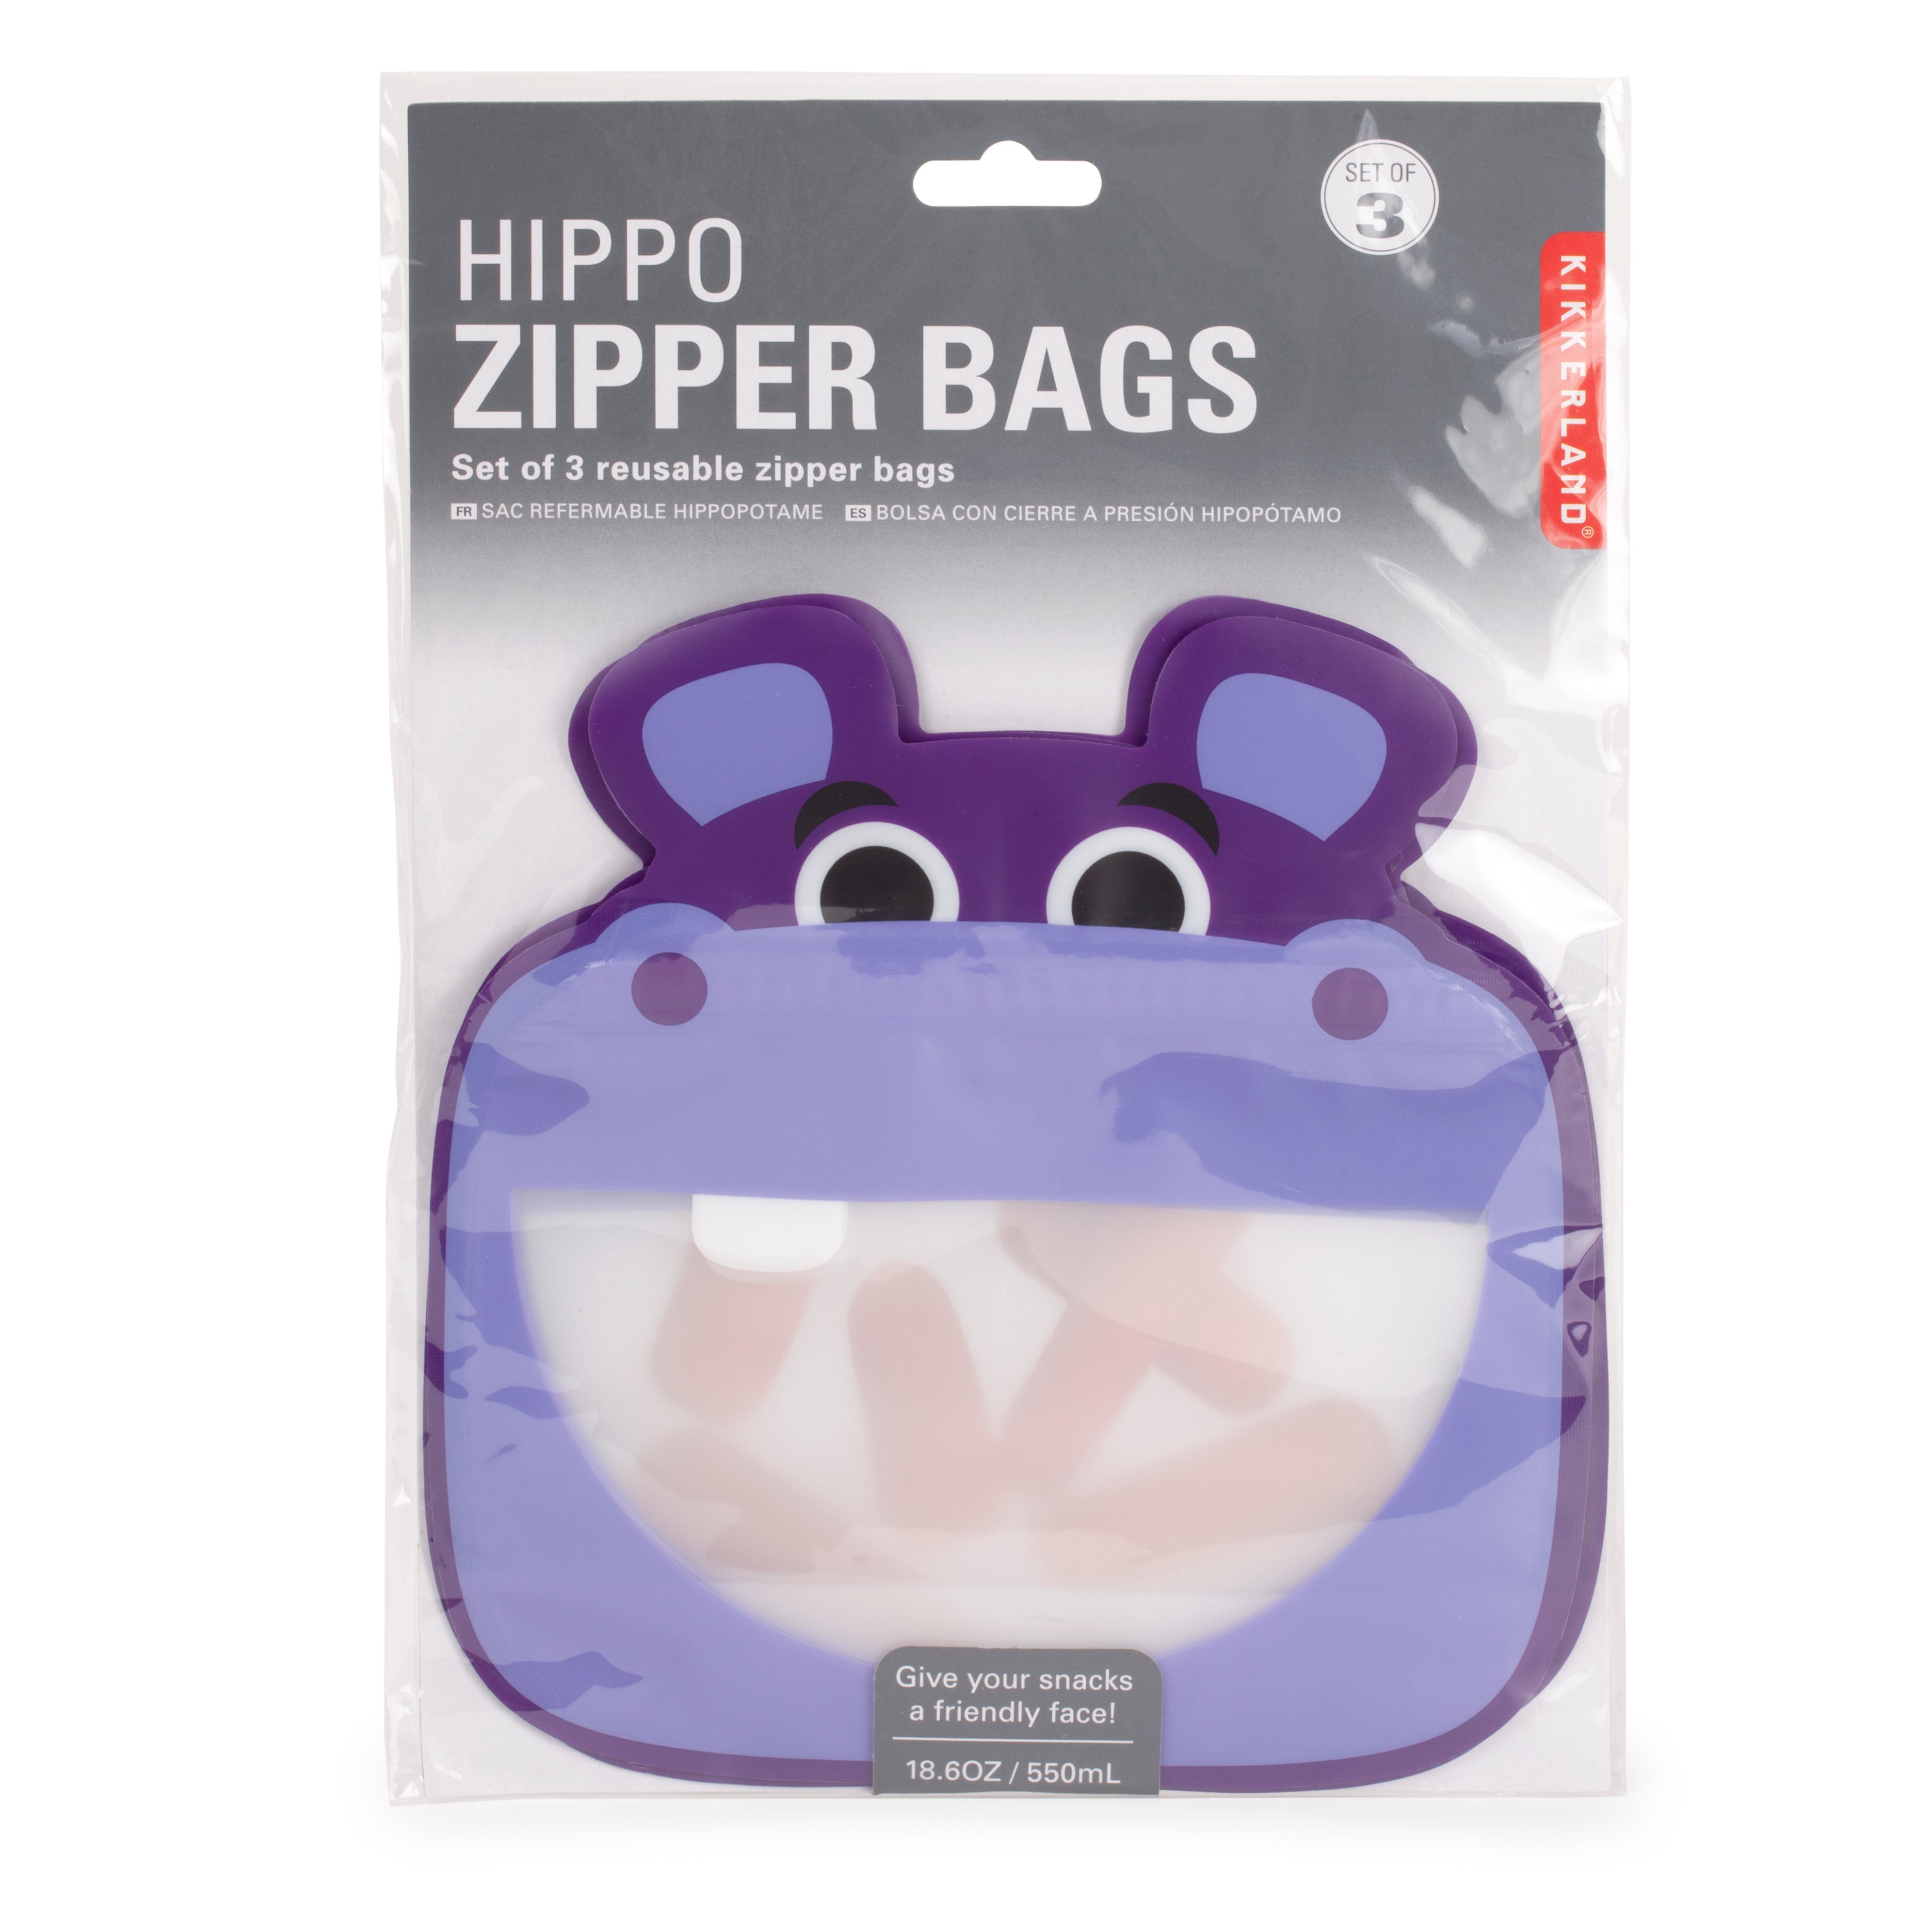 Hippo reusable zipper bags